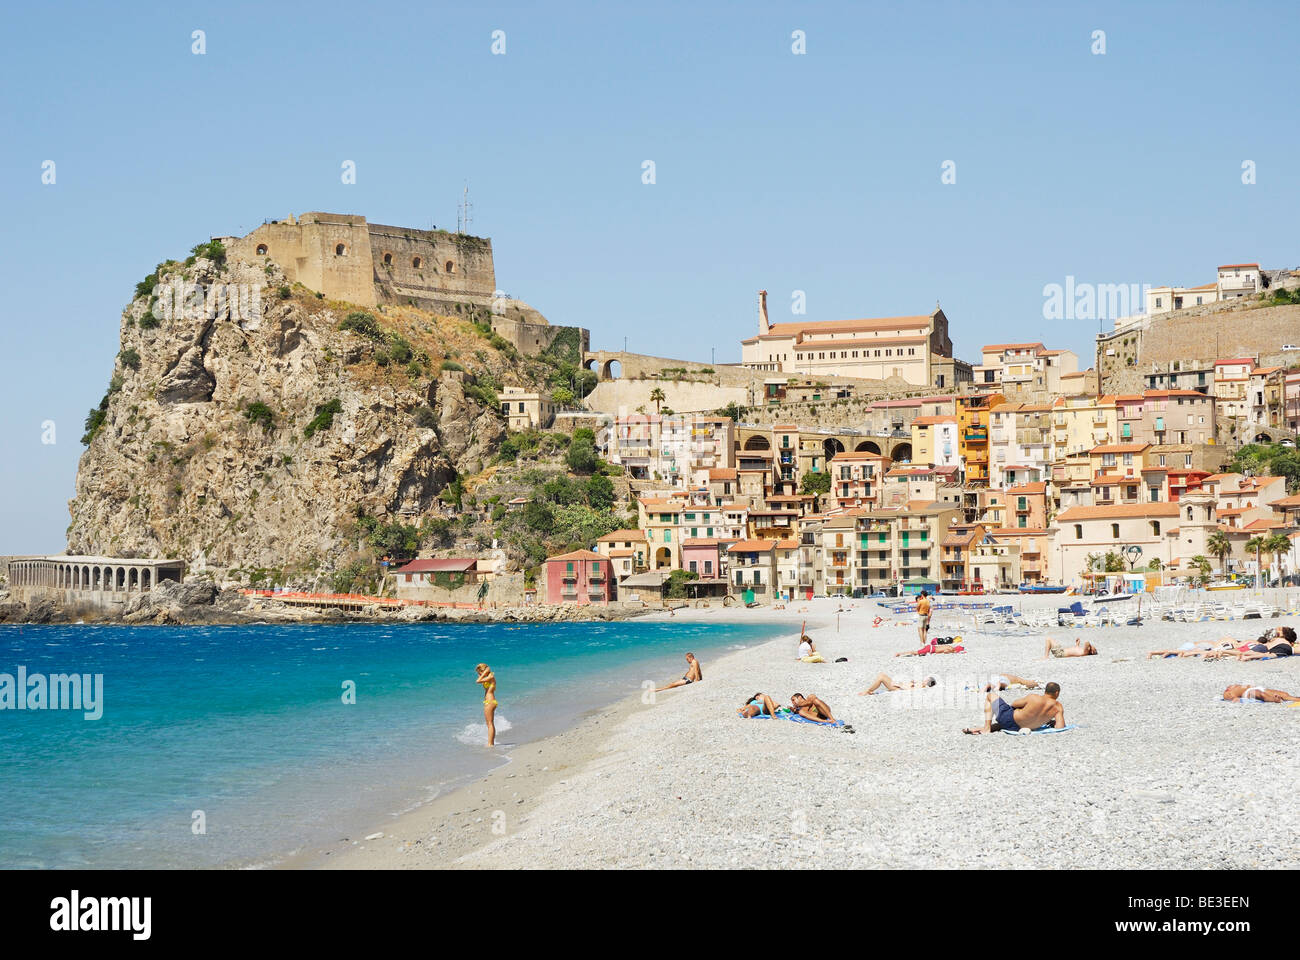 Persone su una spiaggia, città vecchia con il castello nel retro, sulla ripida scogliera costiera, Mar Tirreno, Scilla, Calabria, Sud Italia, Eur Foto Stock